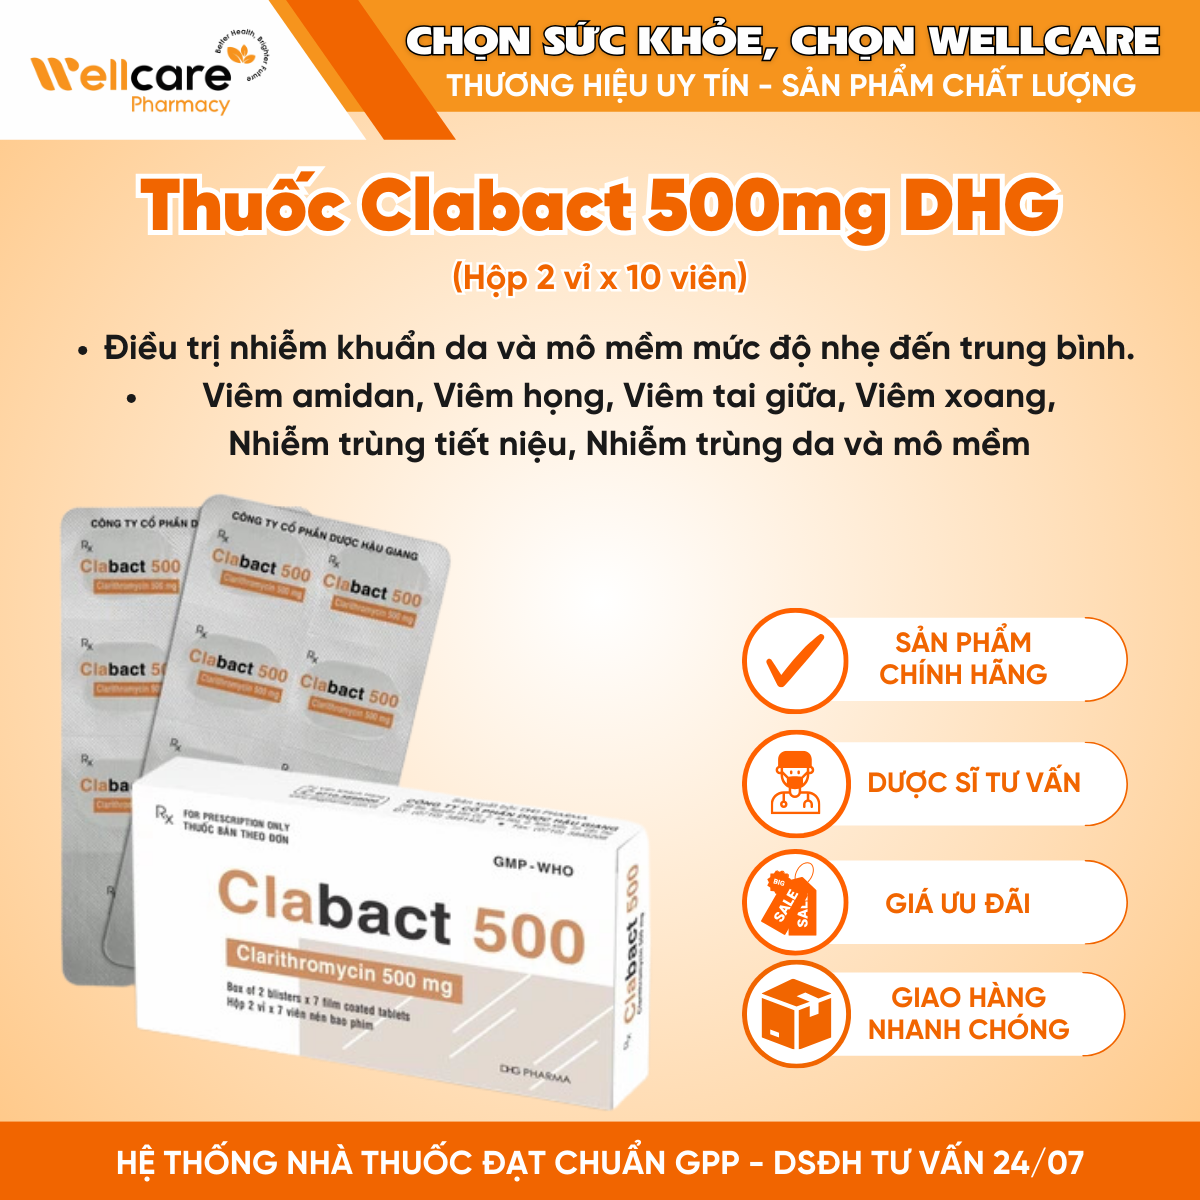 Thuốc Clabact 500mg DHG – Hỗ trợ điều trị nhiễm khuẩn (Hộp 2 vỉ x 10 viên)